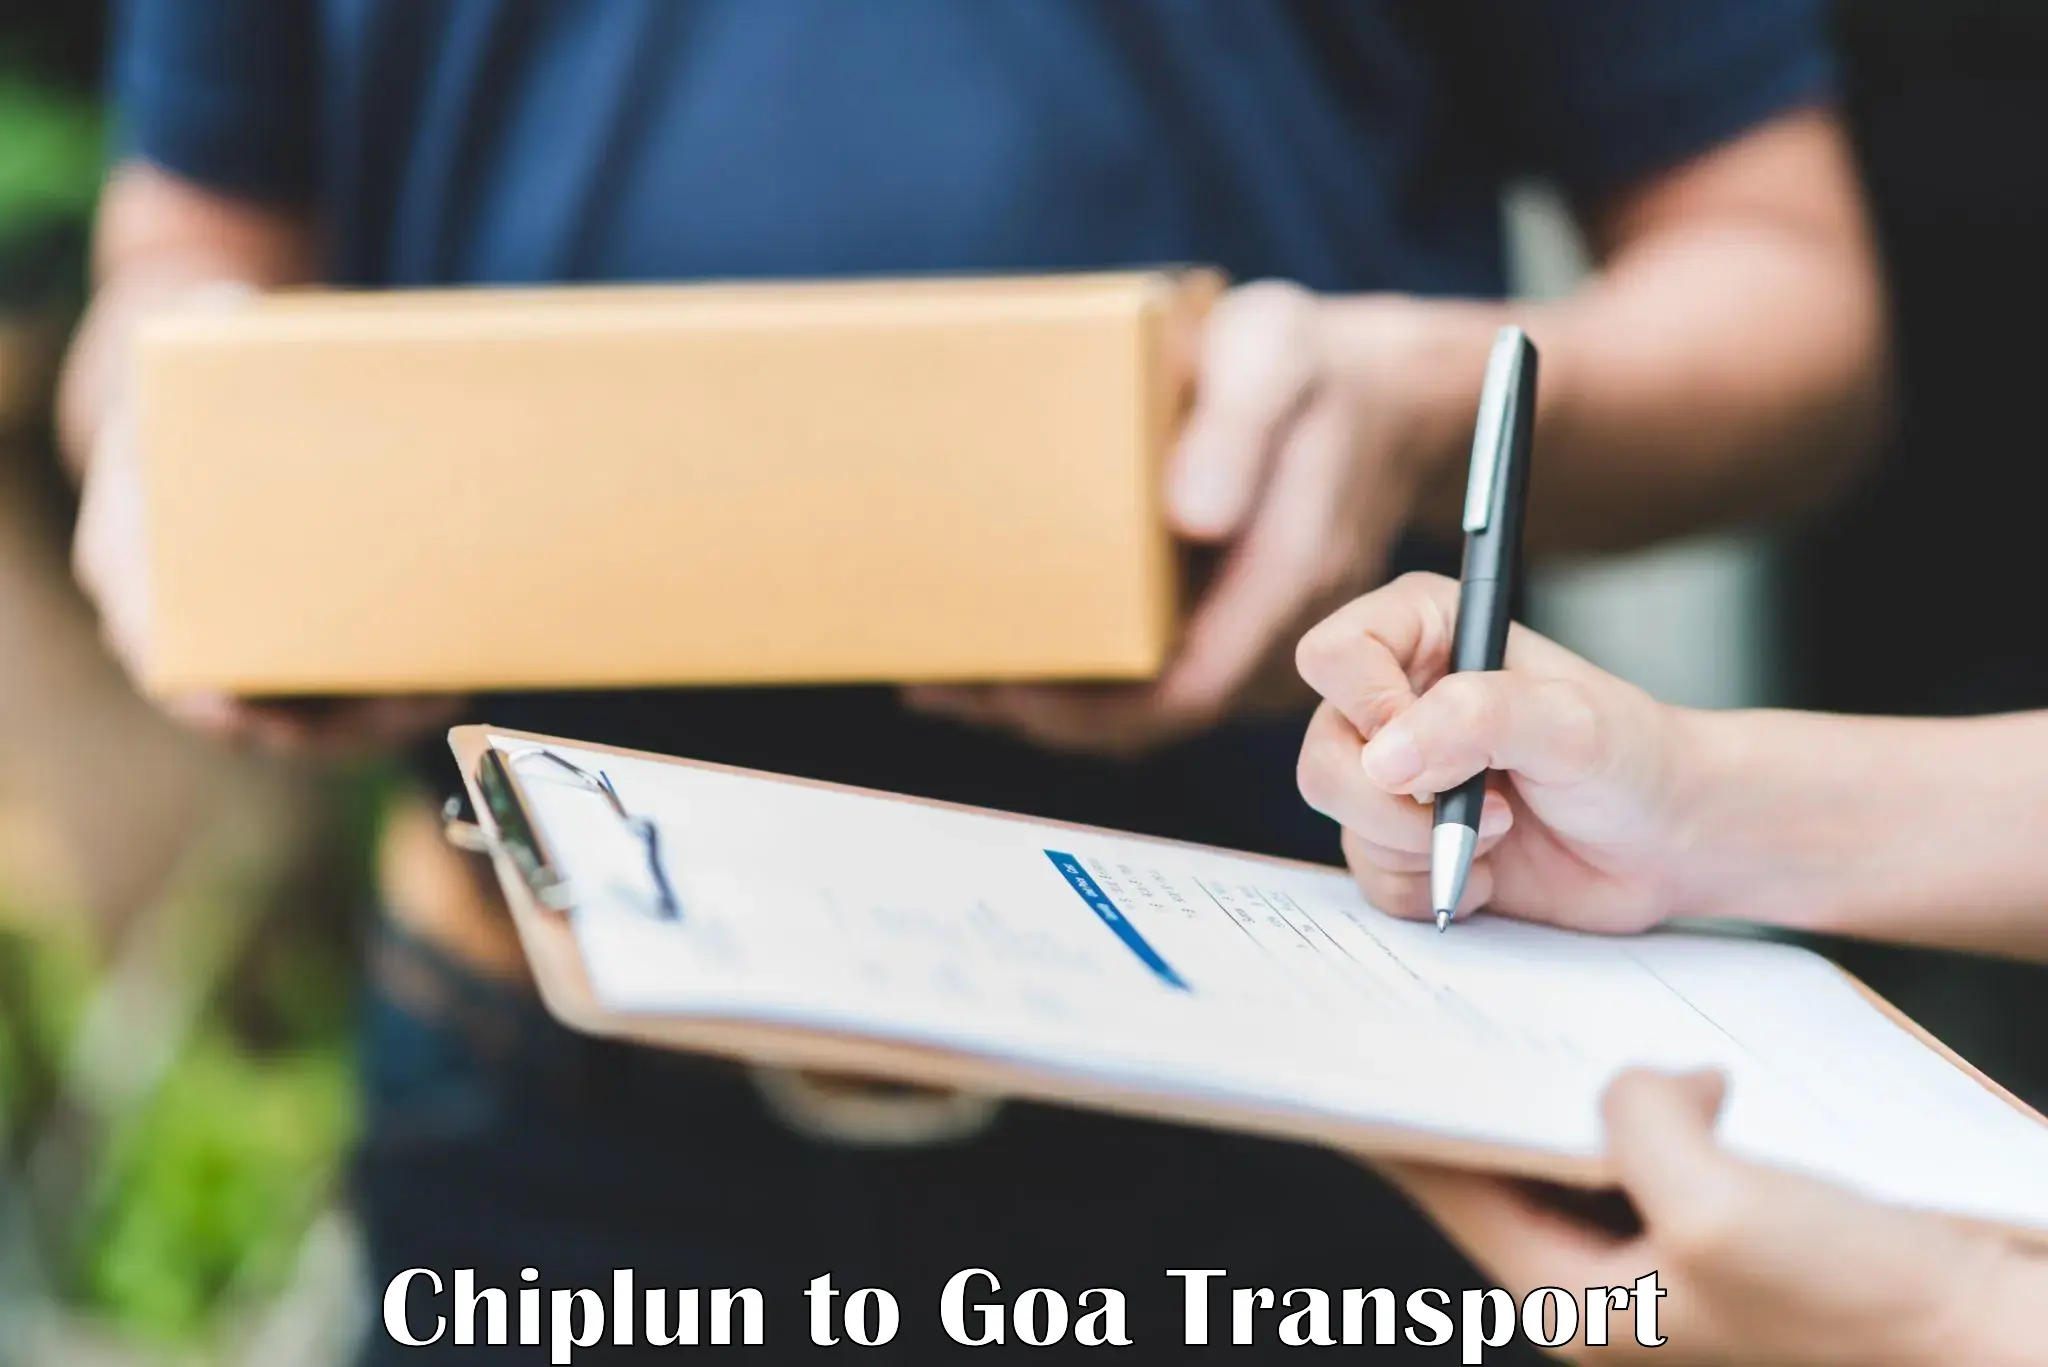 Transport in sharing Chiplun to Panjim